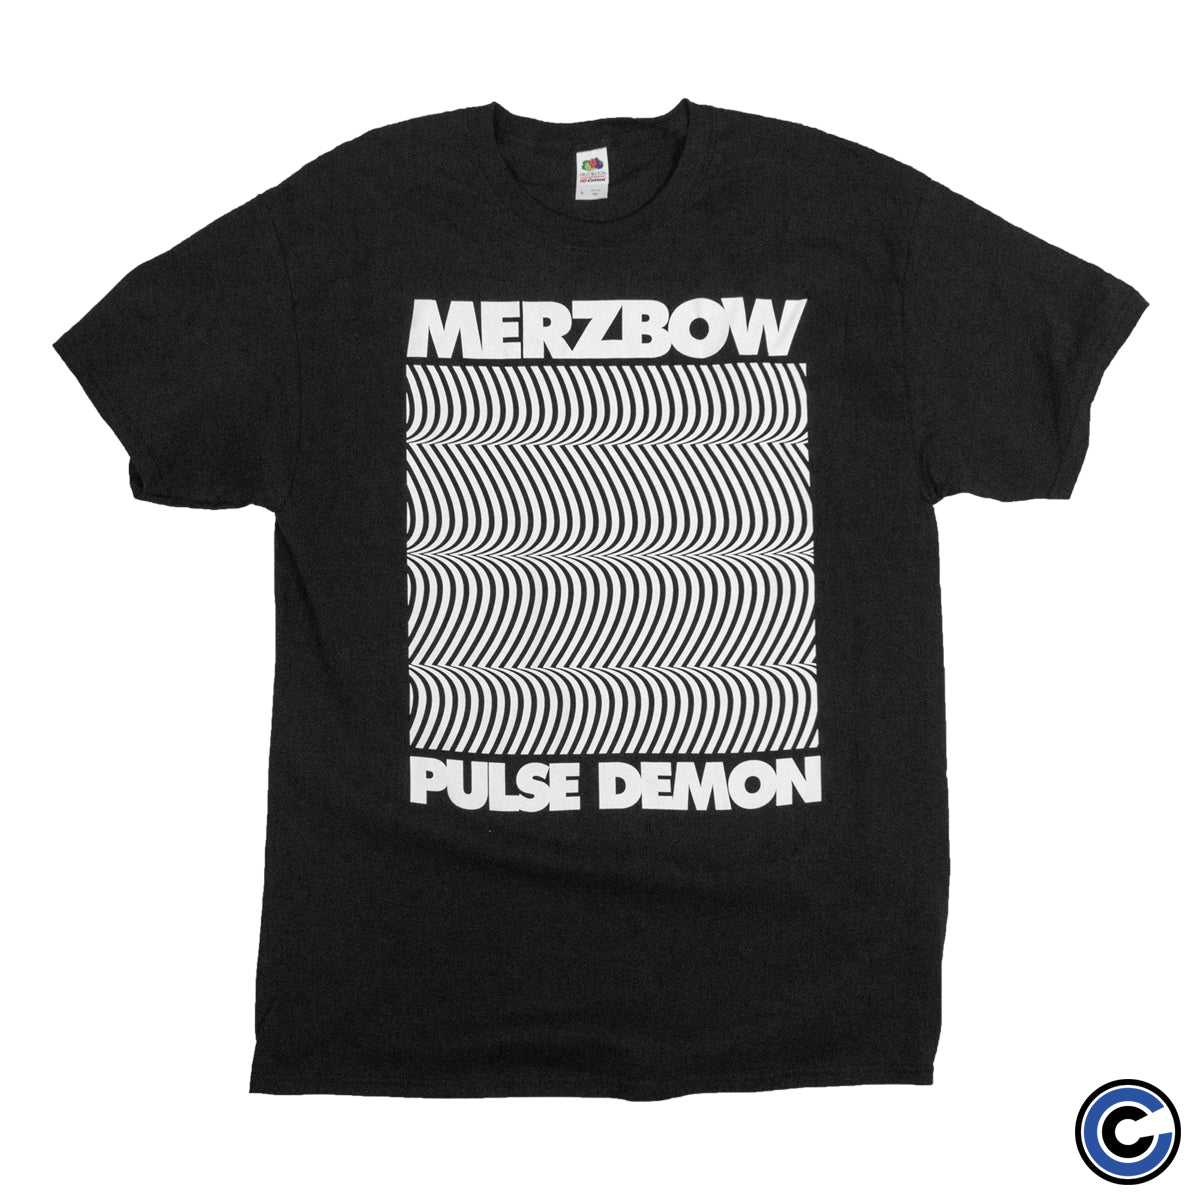 Merzbow "Pulse Demon" Shirt